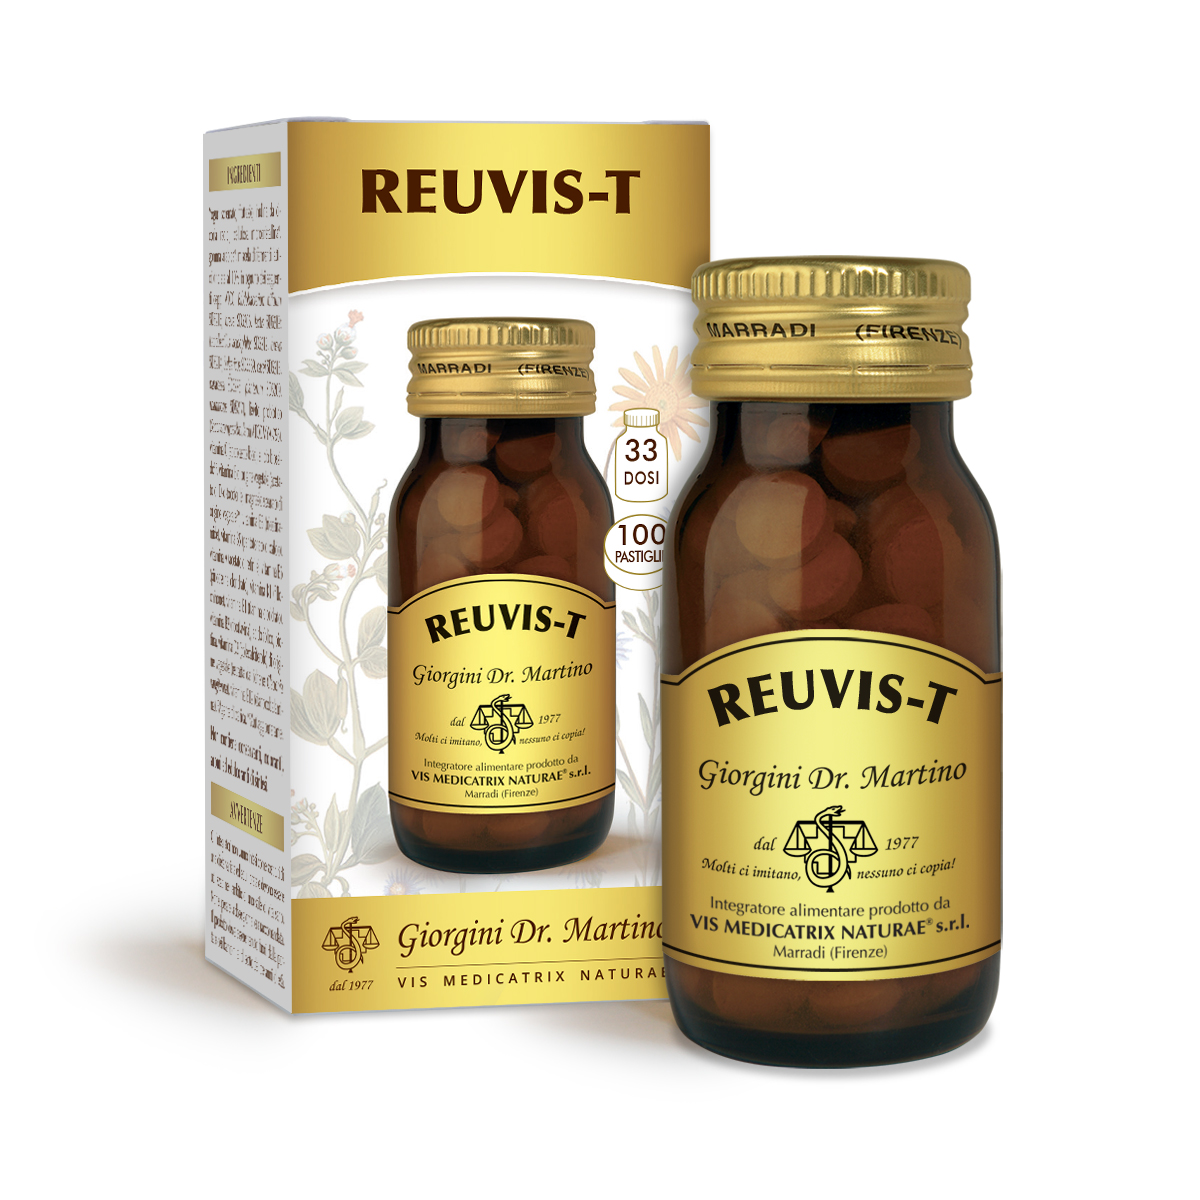 REUVIS-T 50 g - 100 pastiglie